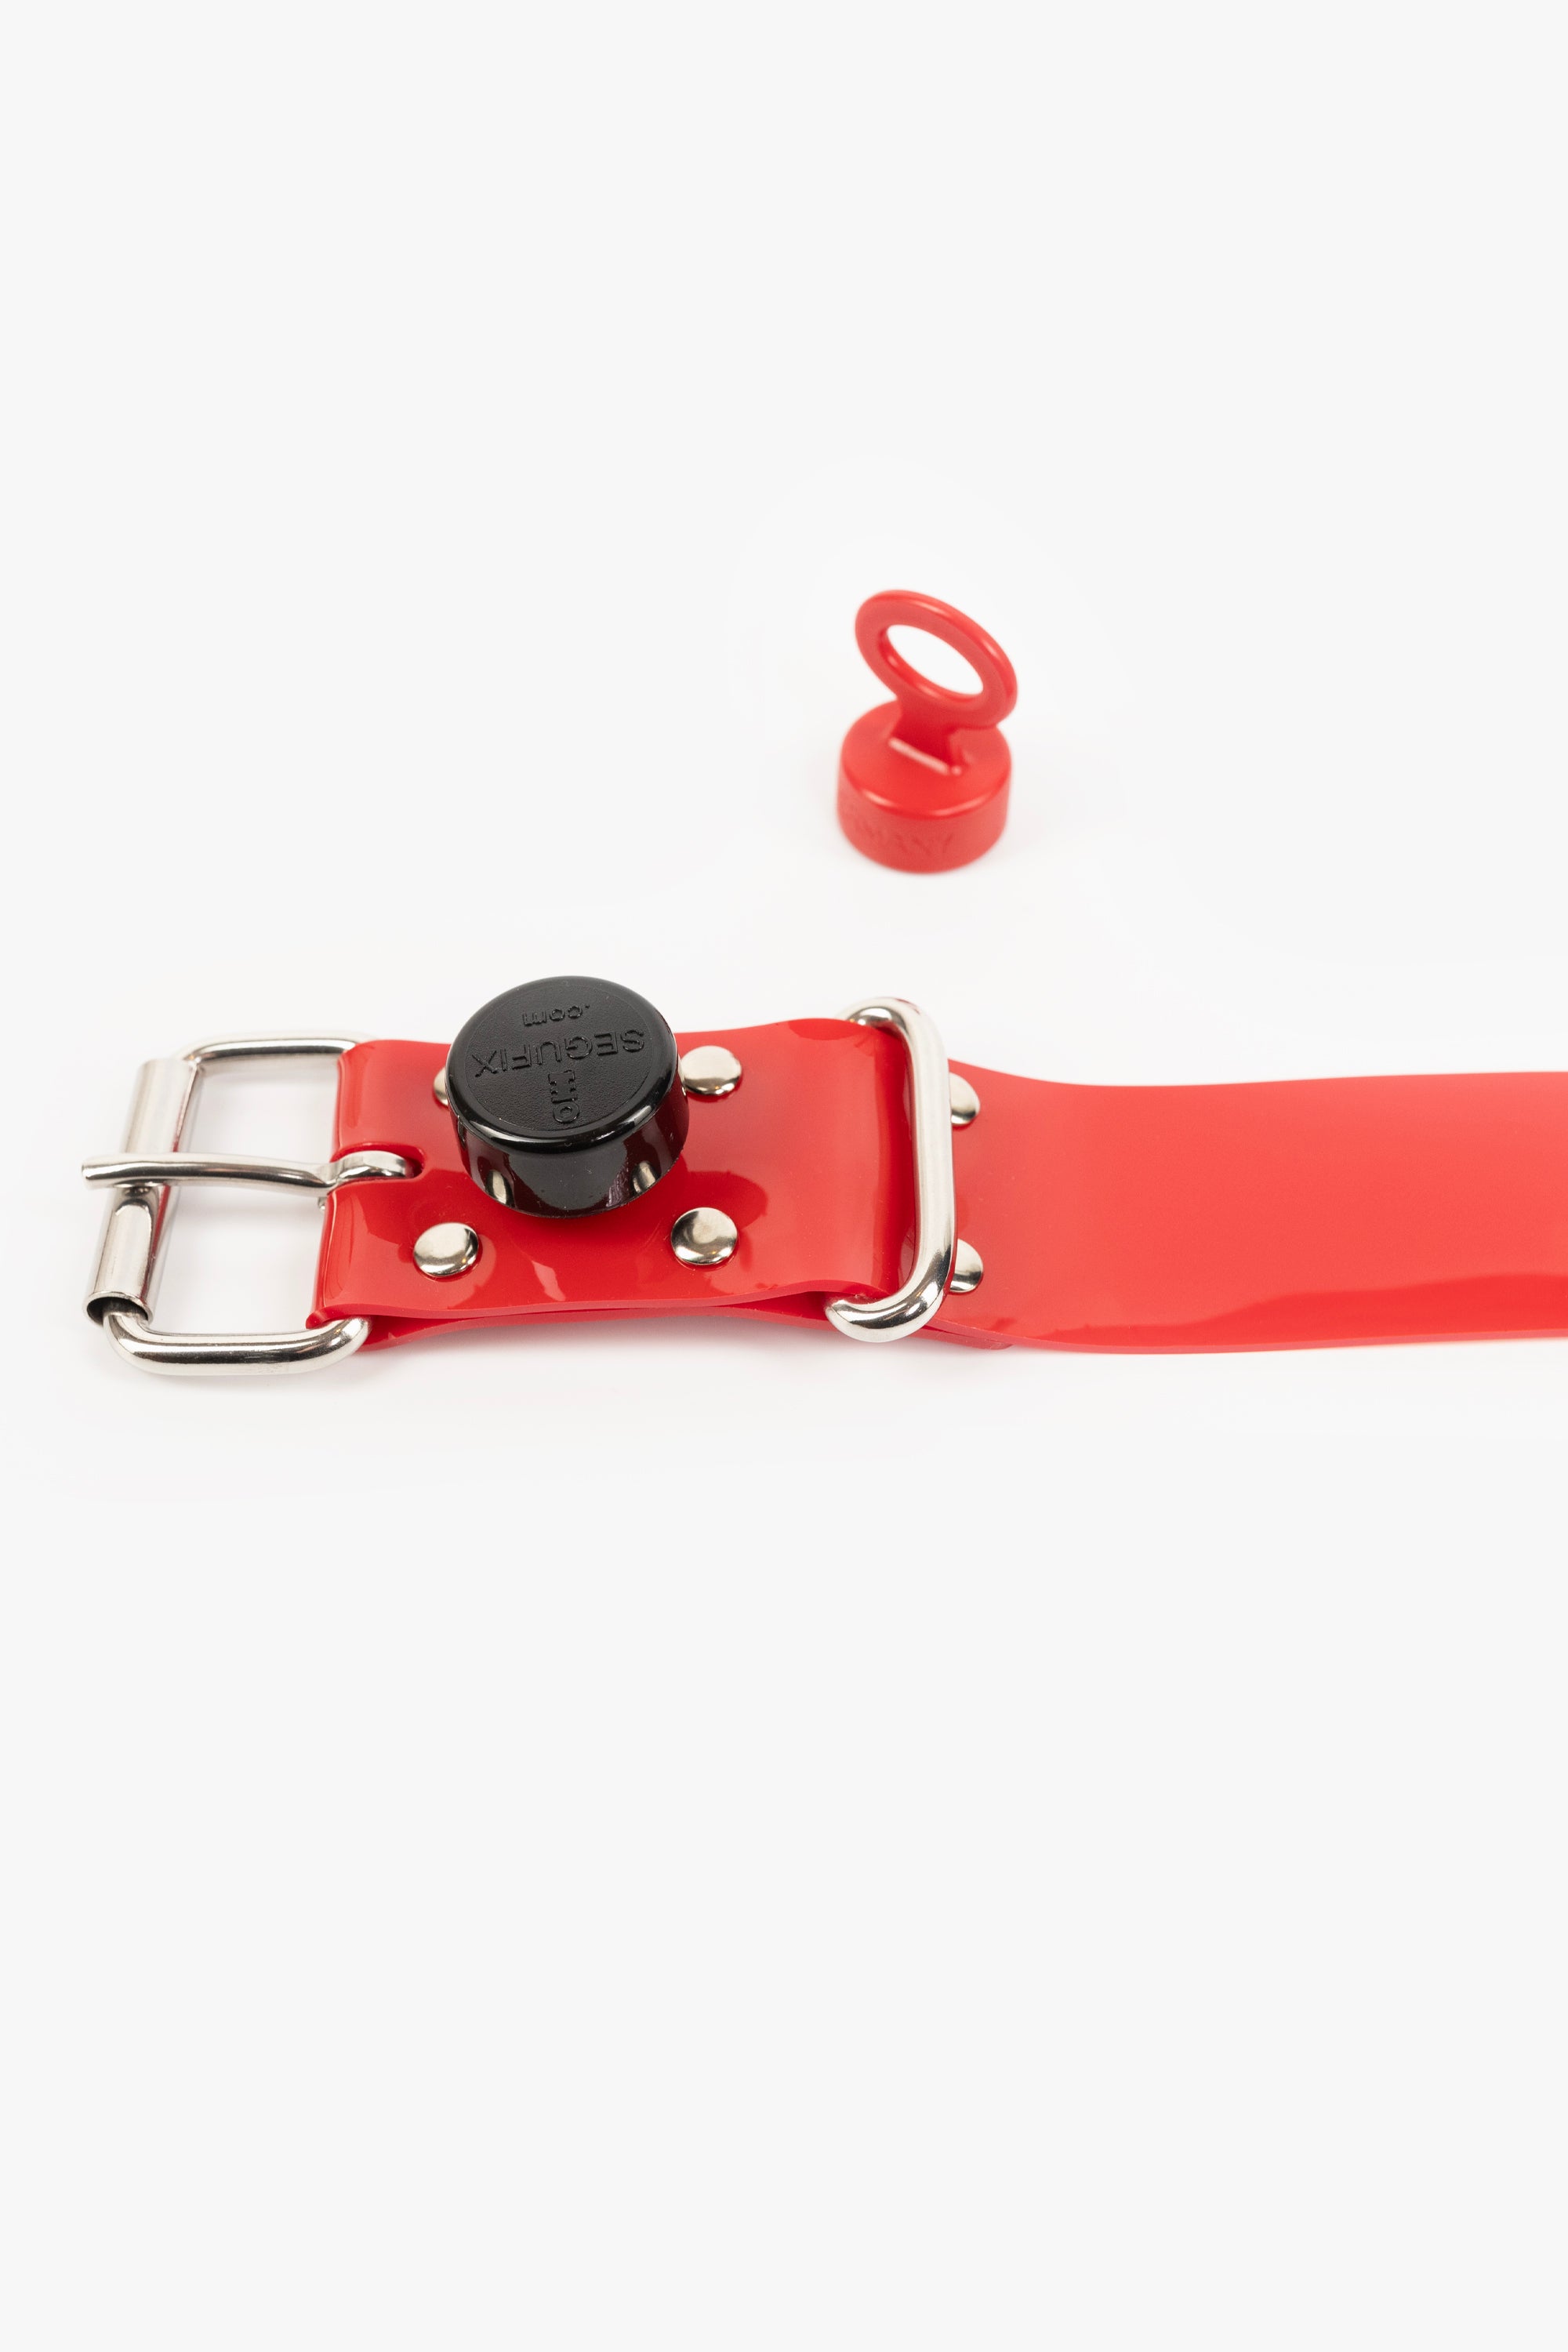 Bondage PVC strap lockable segufix 40 mm, different lengths, red/chrome